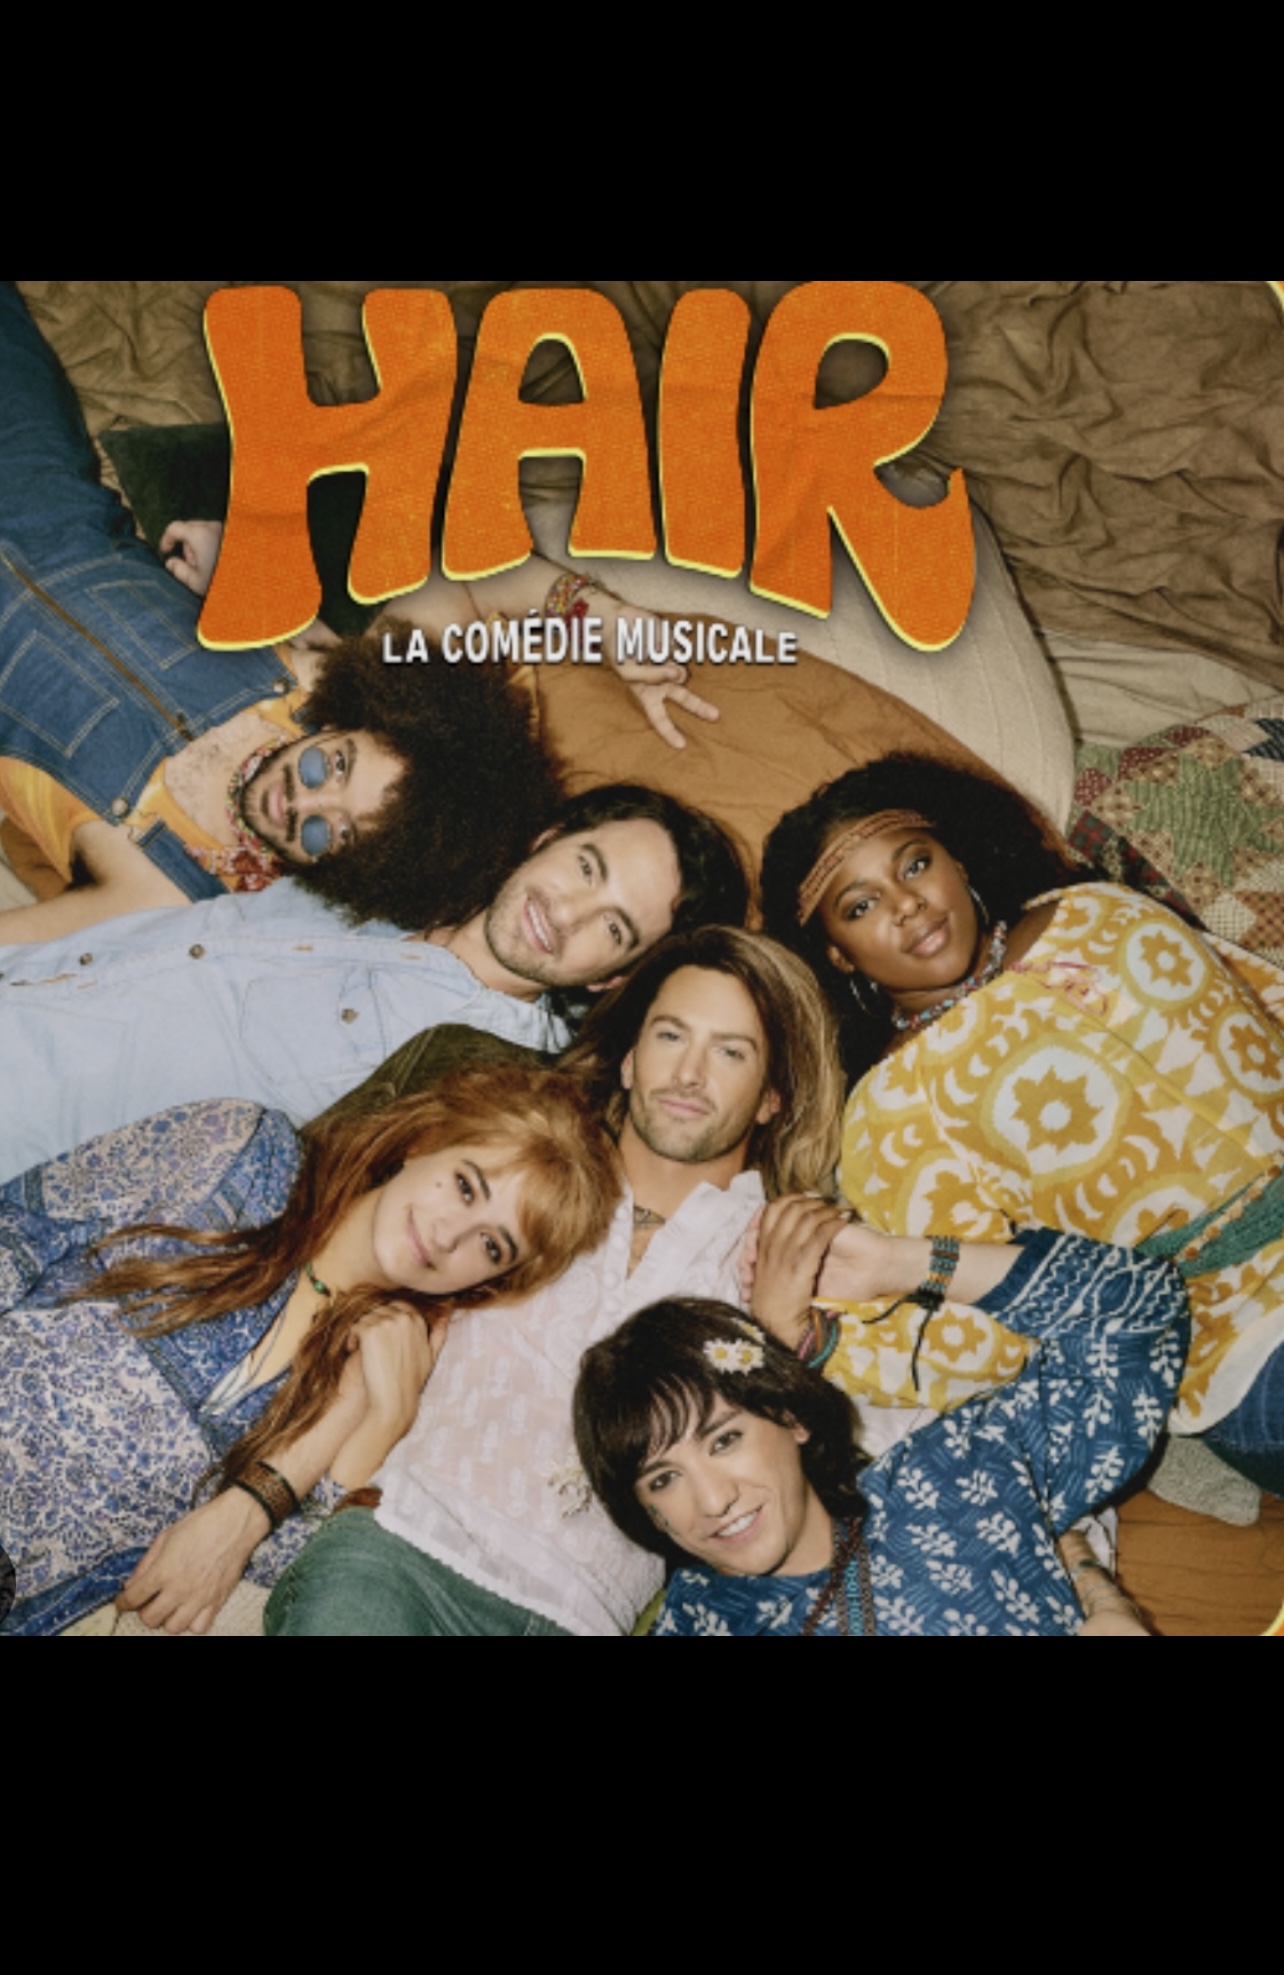 Une affiche pour les cheveux mettant en scène un groupe de personnes posant sur un lit, dégageant une énergie débordante.